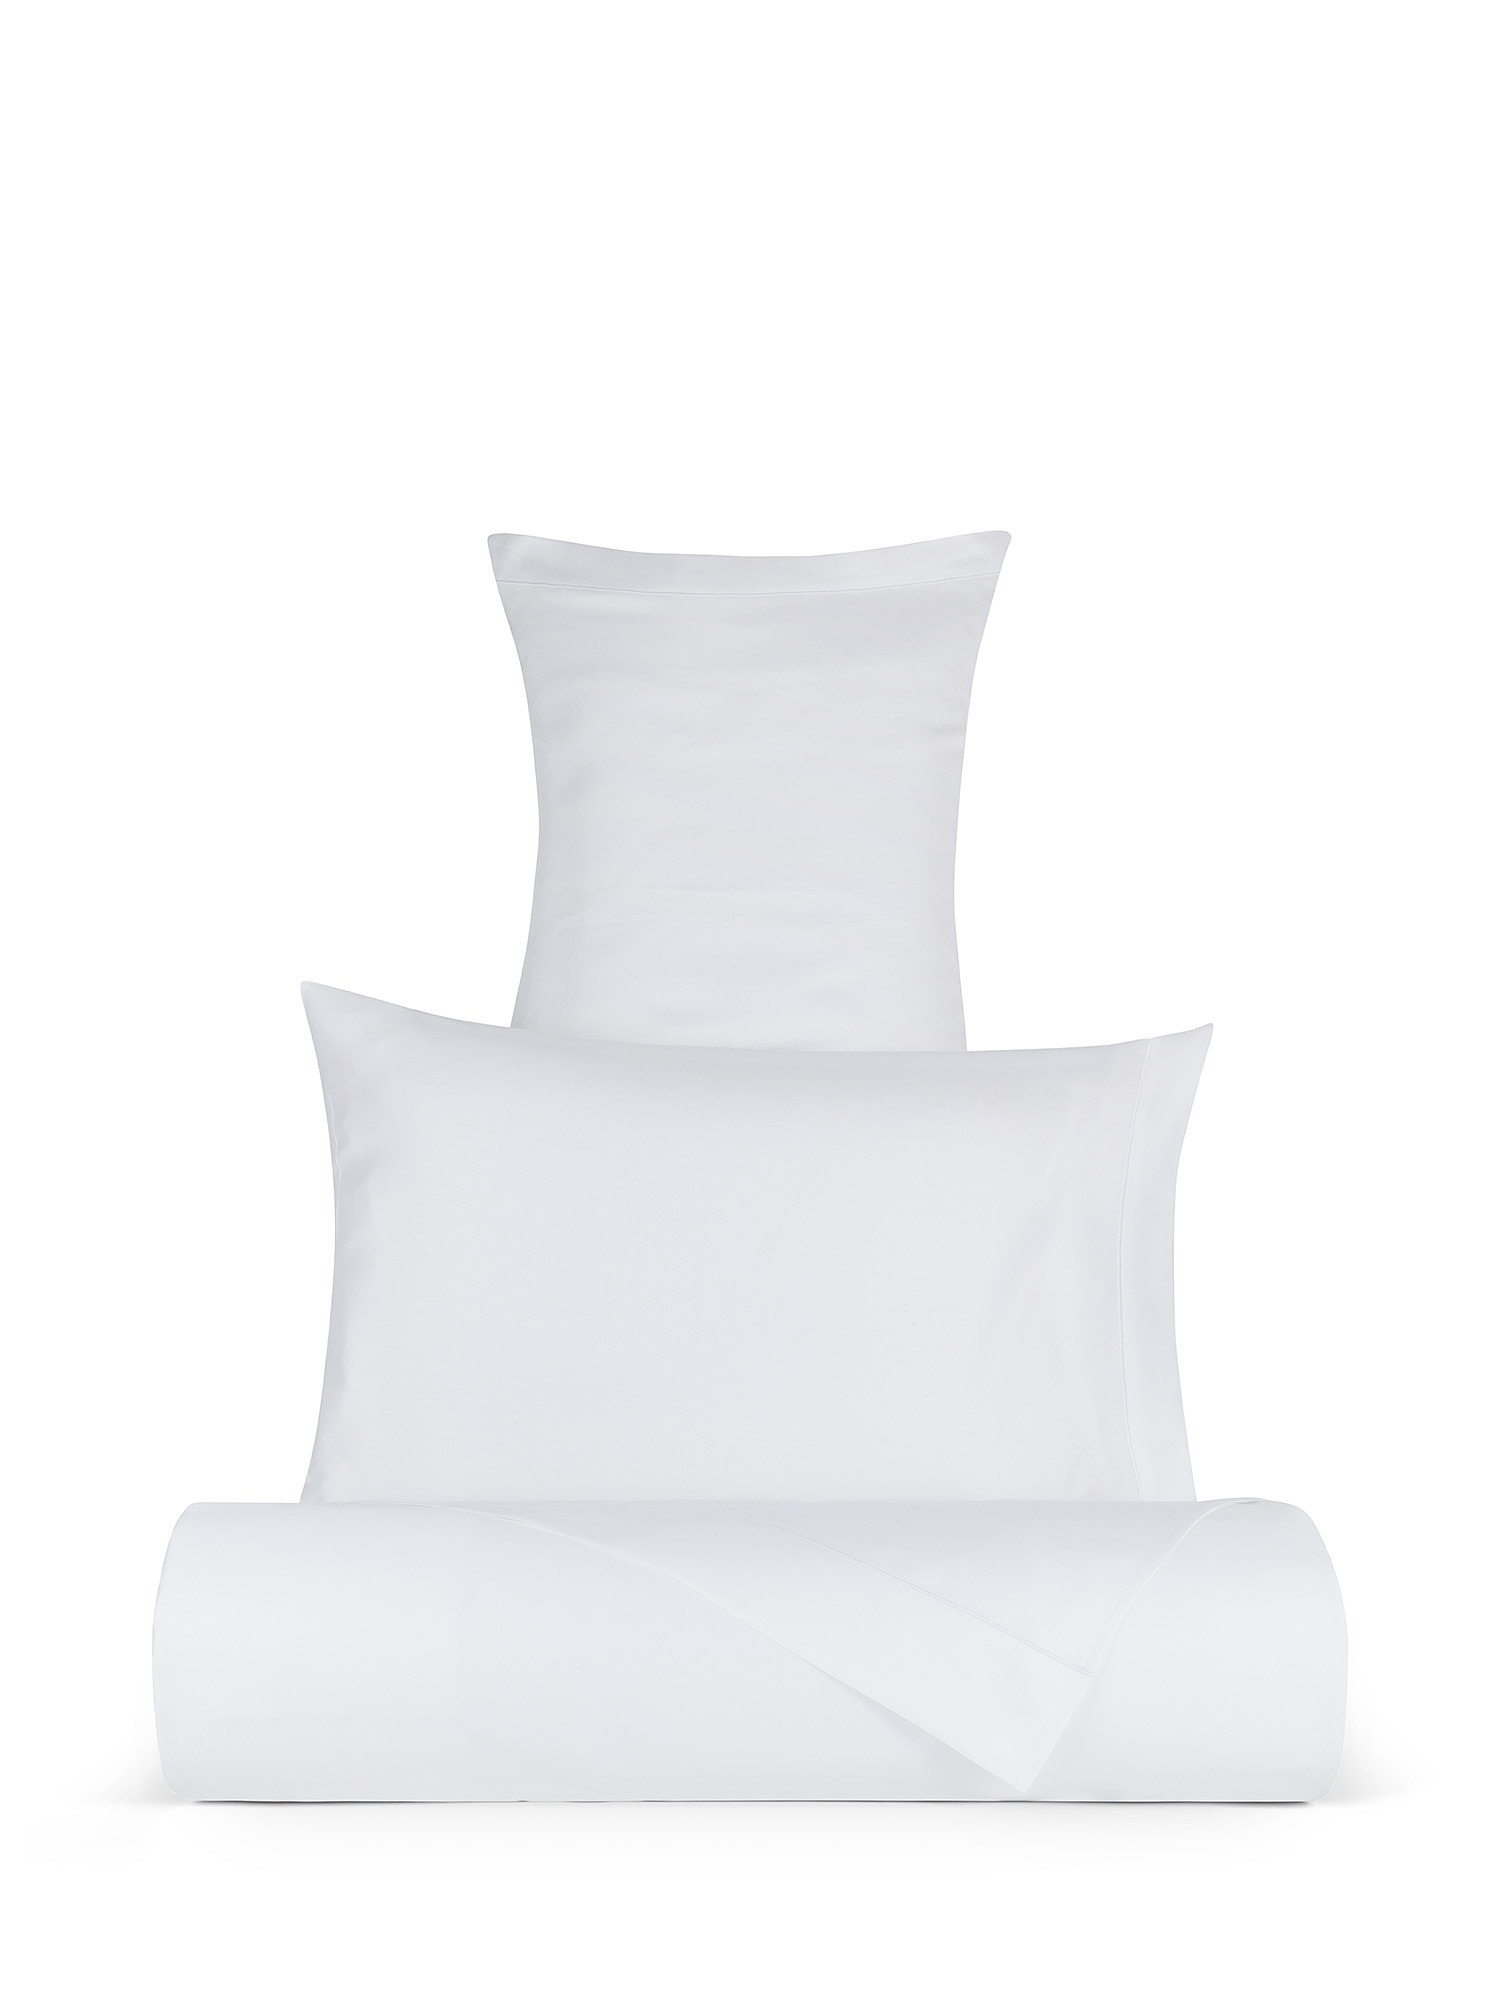 Egyptian cotton satin pillowcase Portofino, White, large image number 3